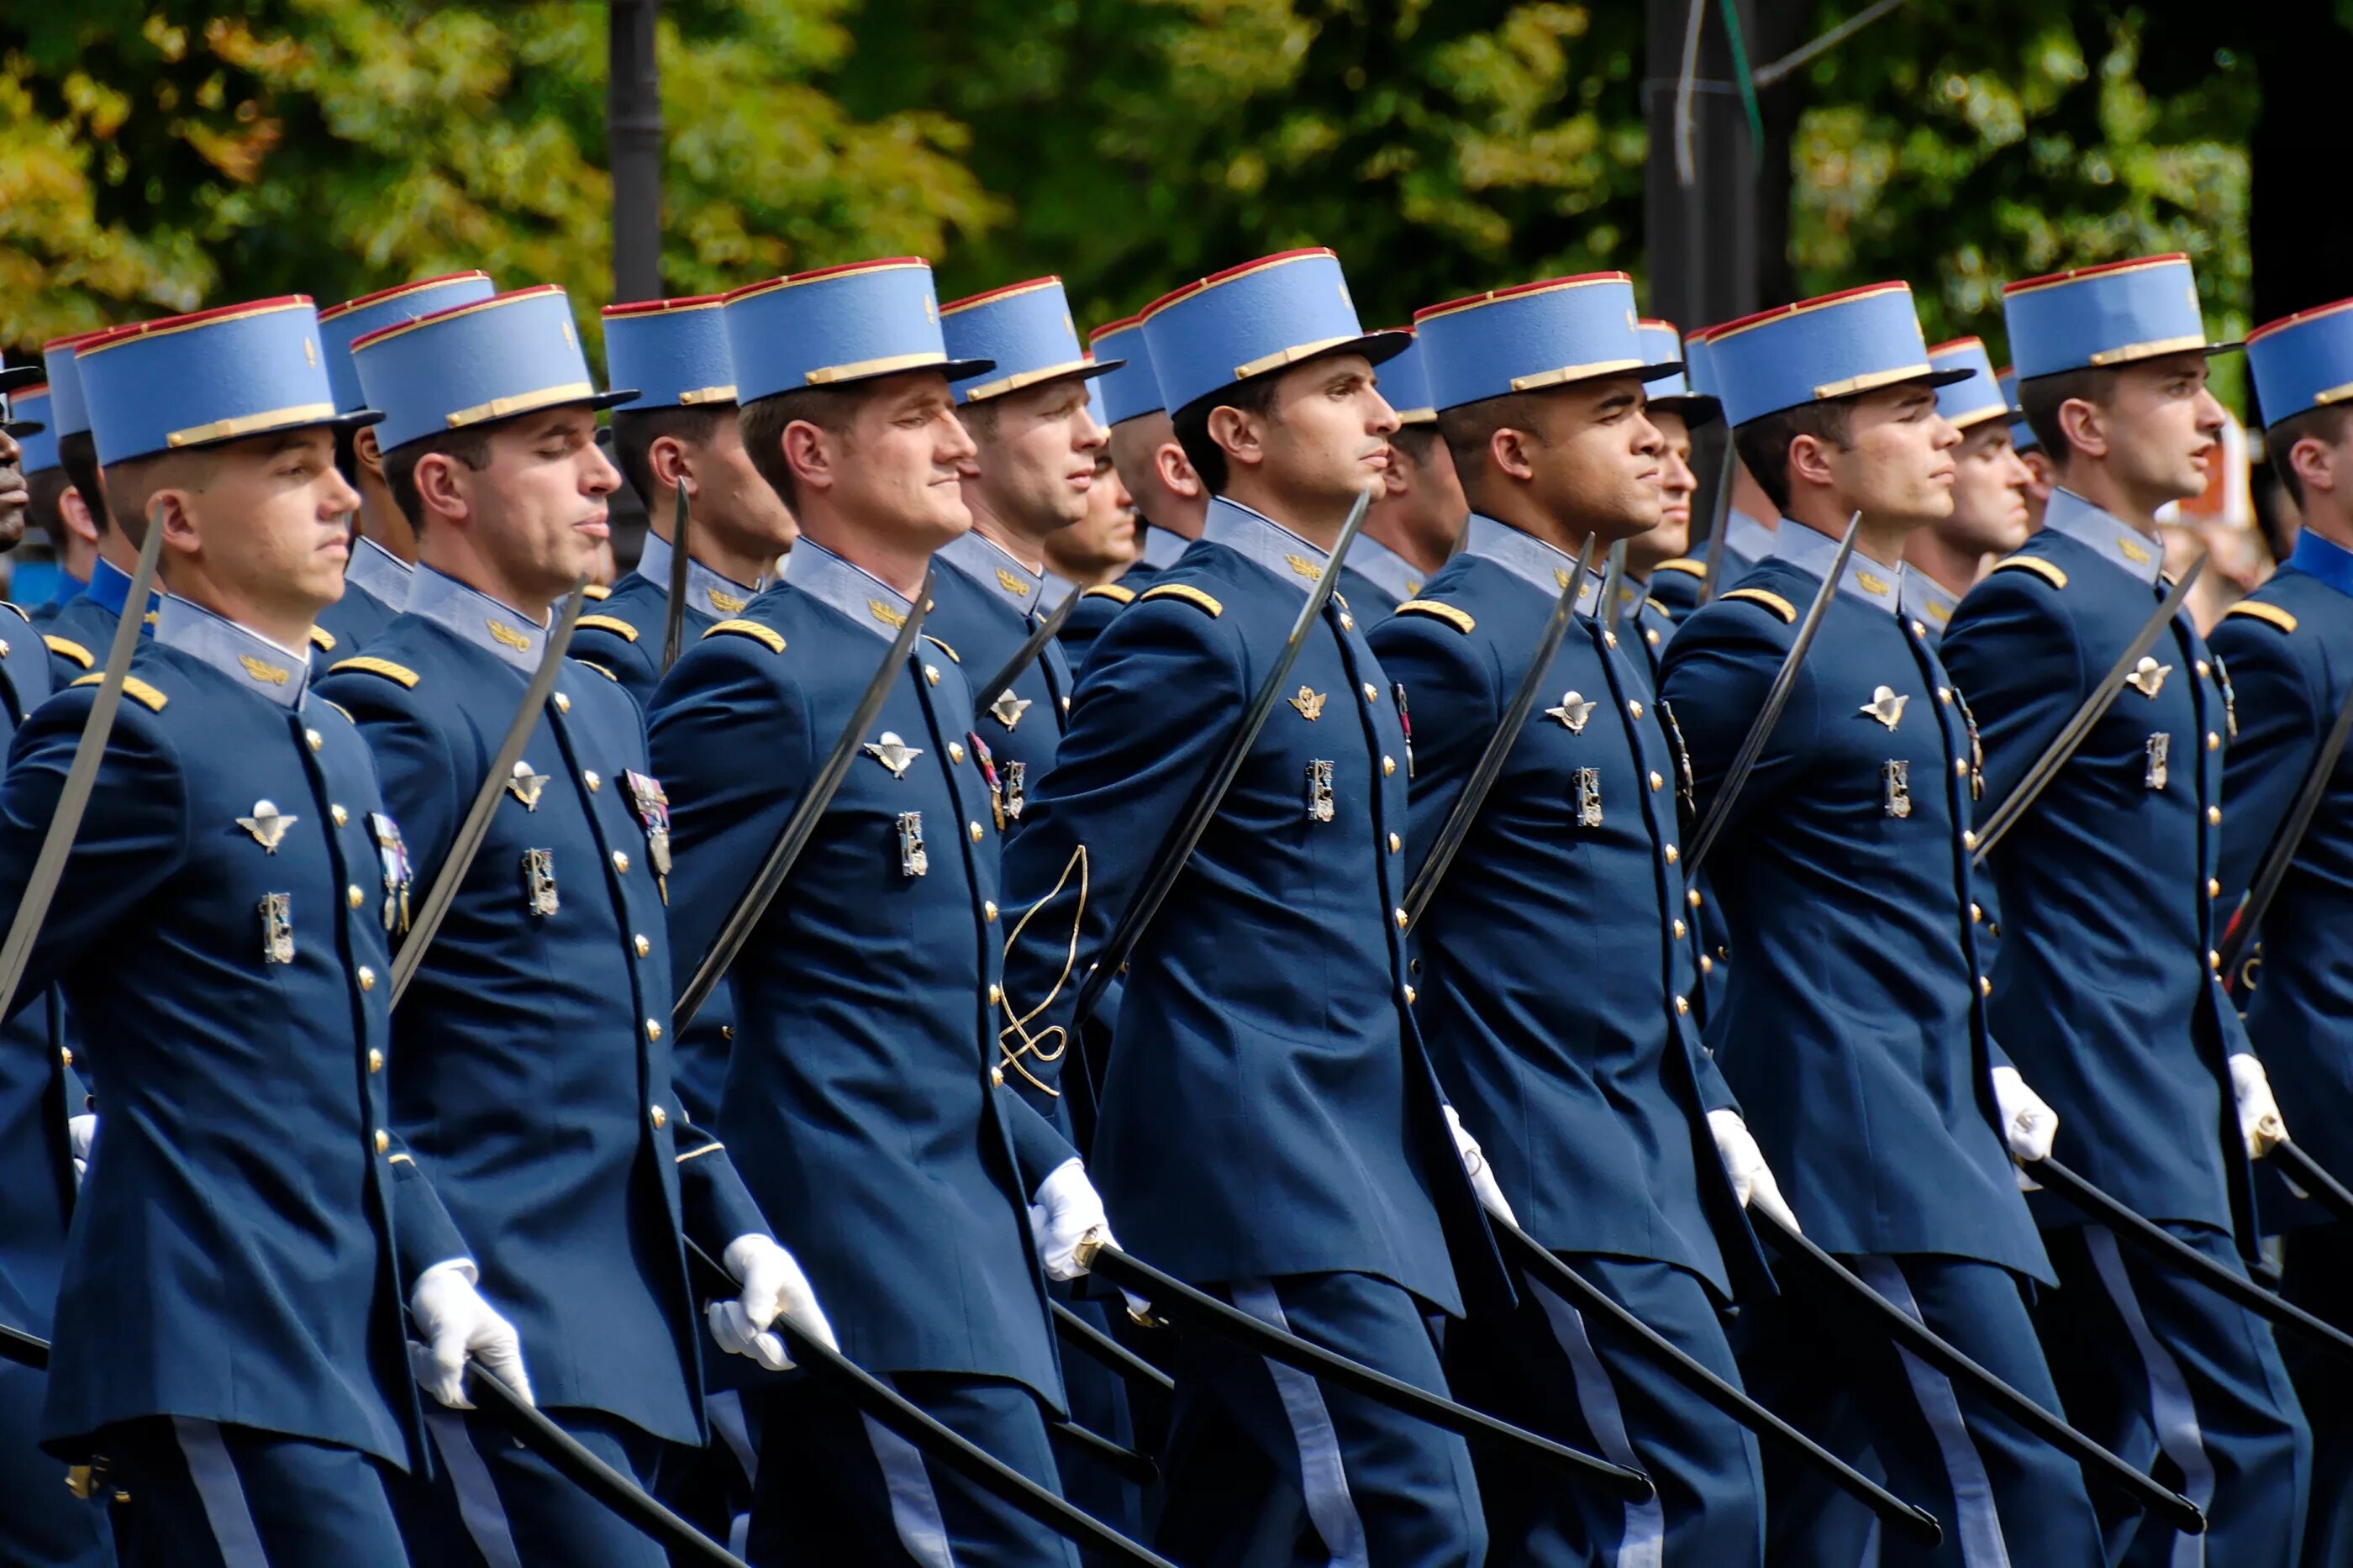 Военная жандармерия Франции. Парадная форма вс Франции. Парадная униформа армии Франции. Военная форма Франции парадная.